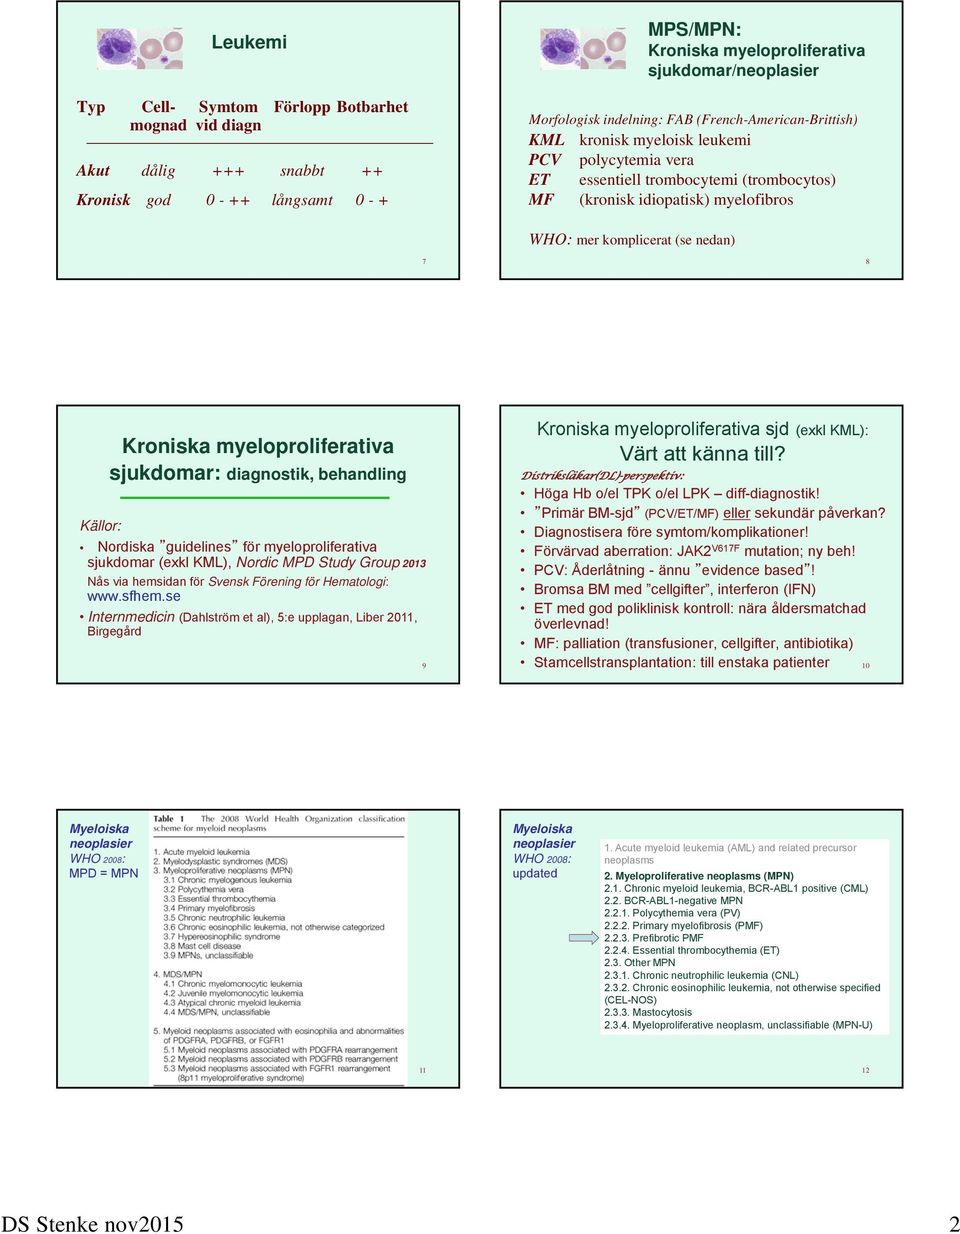 Kroniska myeloproliferativa sjukdomar: diagnostik, behandling Källor: Nordiska guidelines för myeloproliferativa sjukdomar (exkl KML), Nordic MPD Study Group 2013 Nås via hemsidan för Svensk Förening